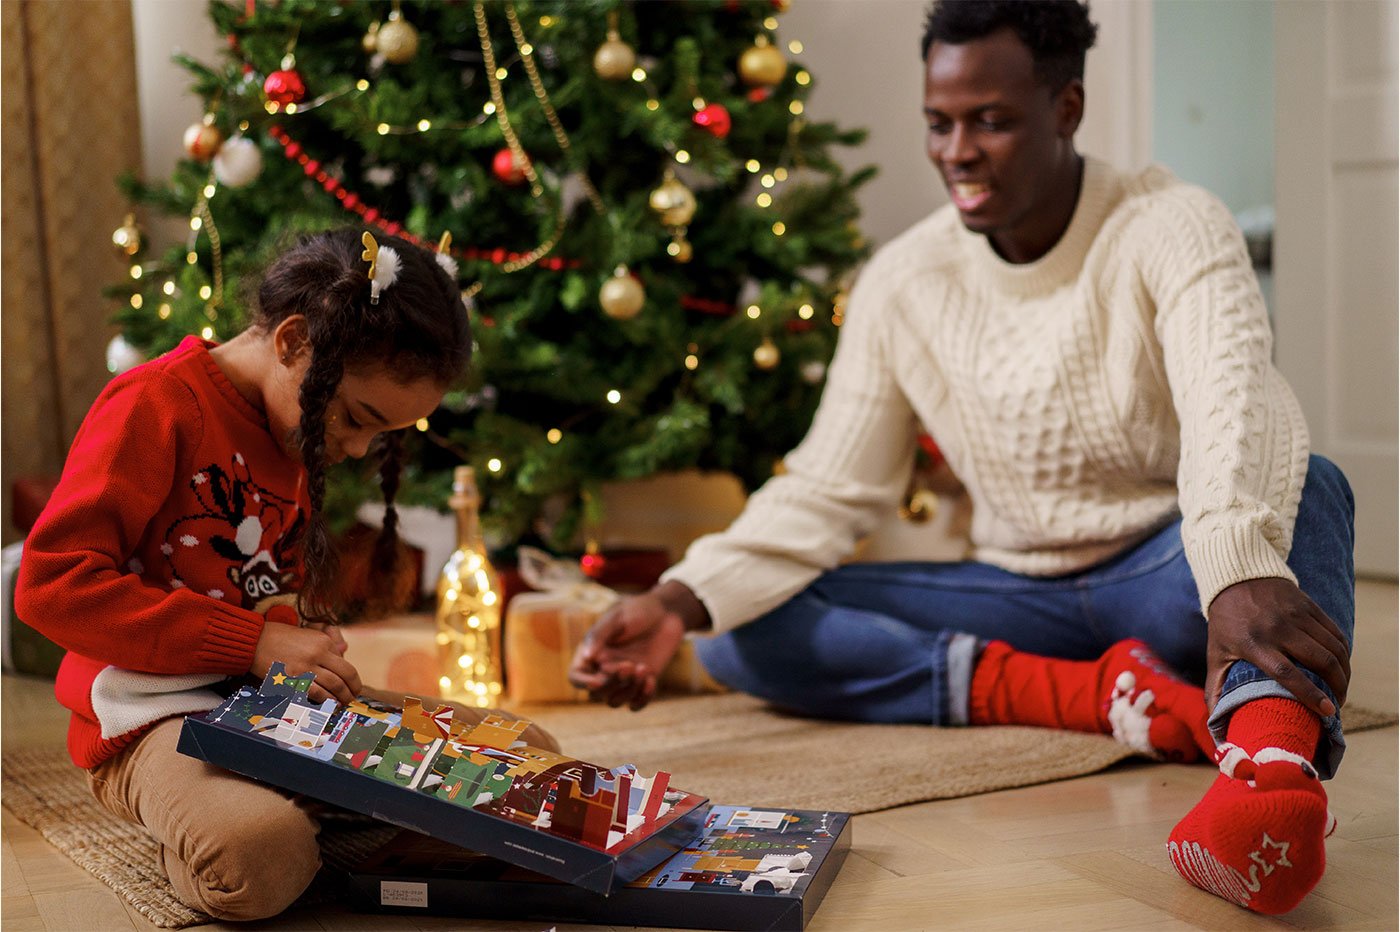 Notre sélection Playmobil en promo pour vos cadeaux de Noël